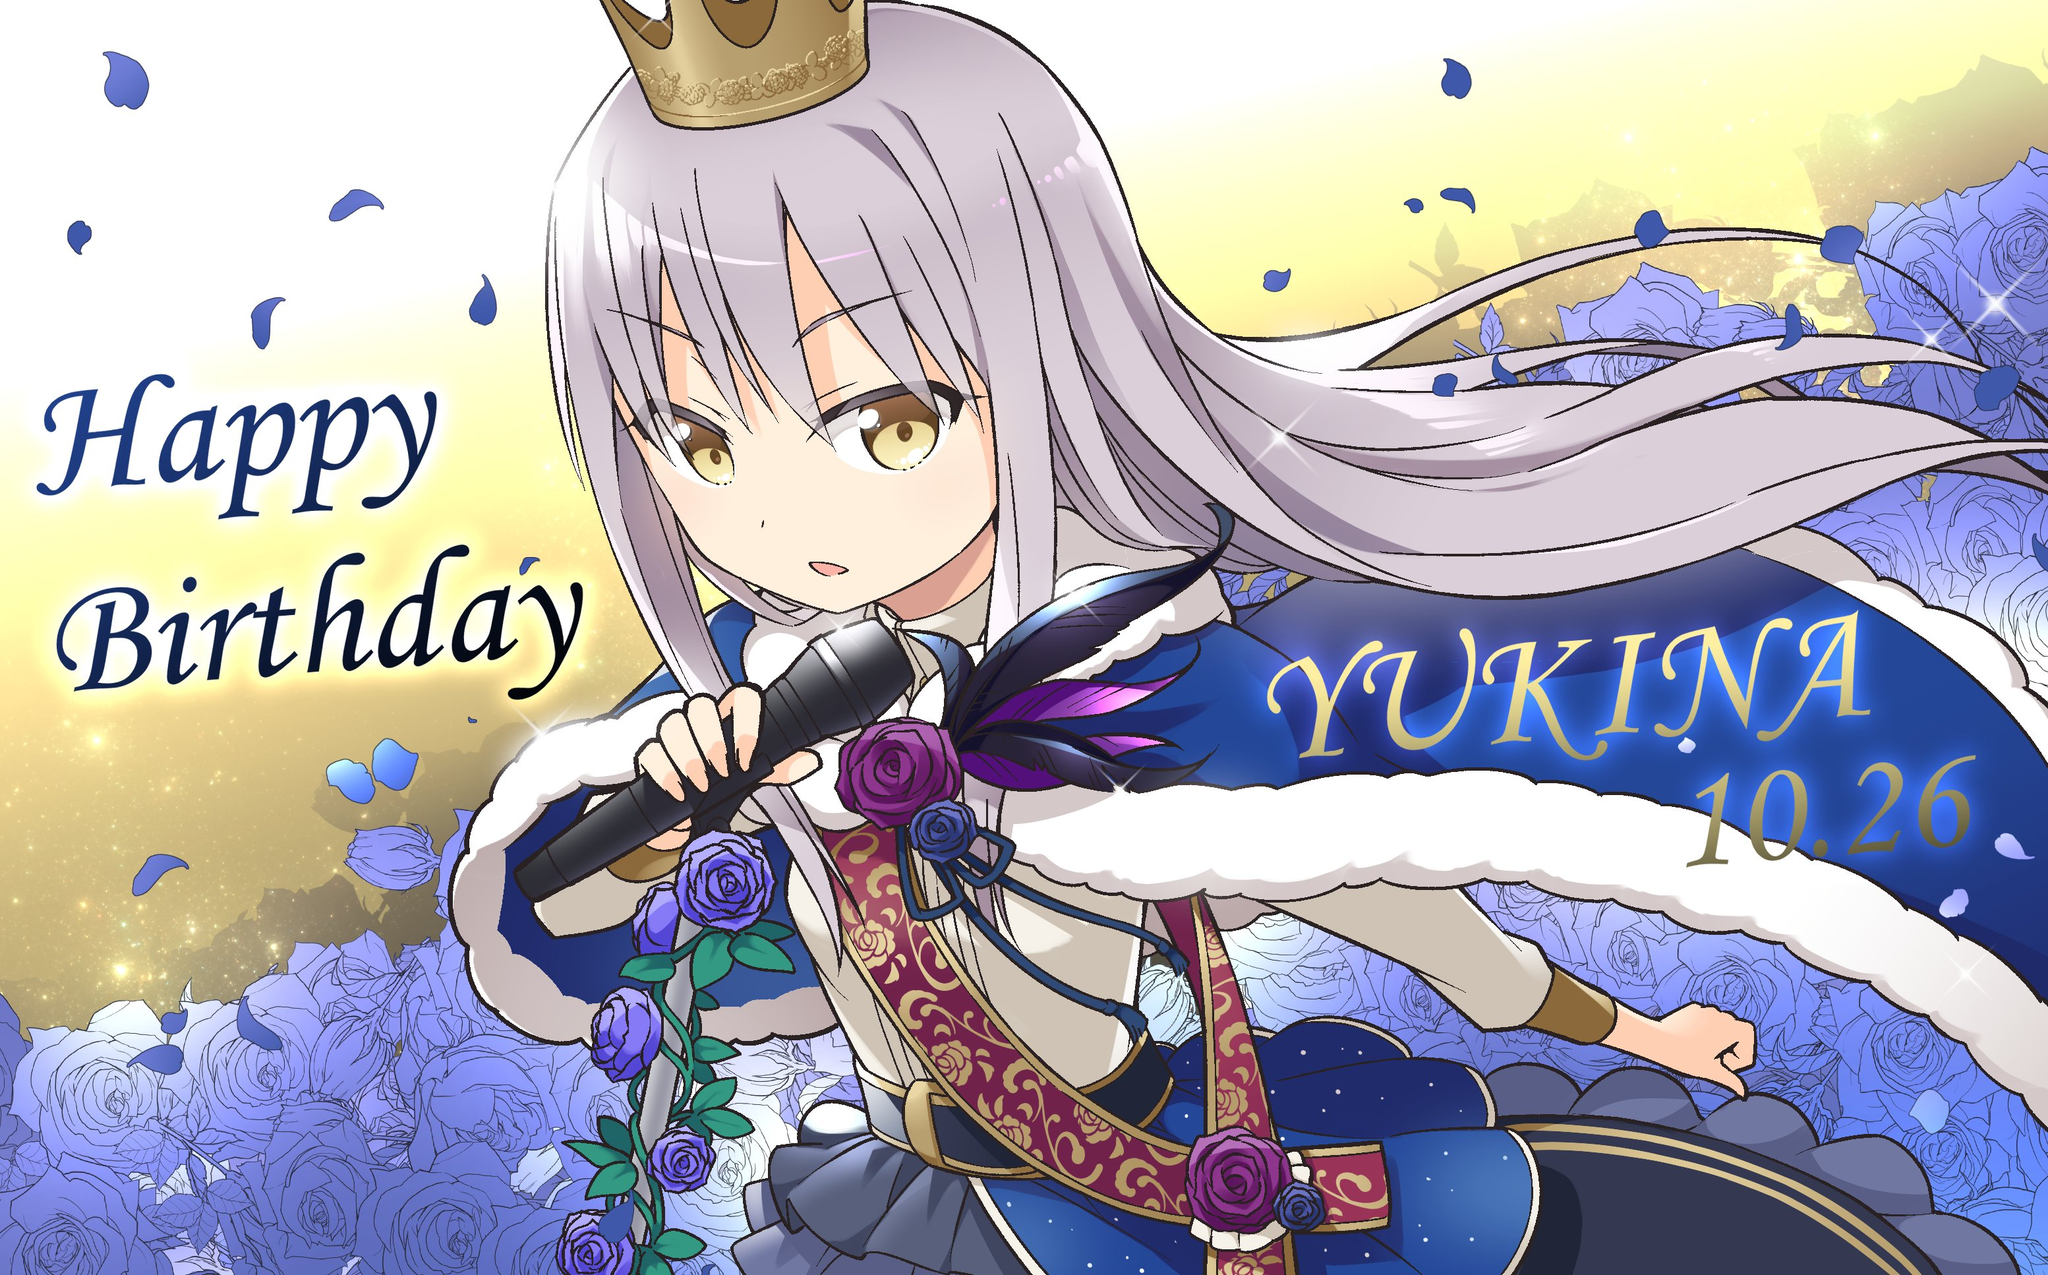 Happy Birthday 2020 - Yukina